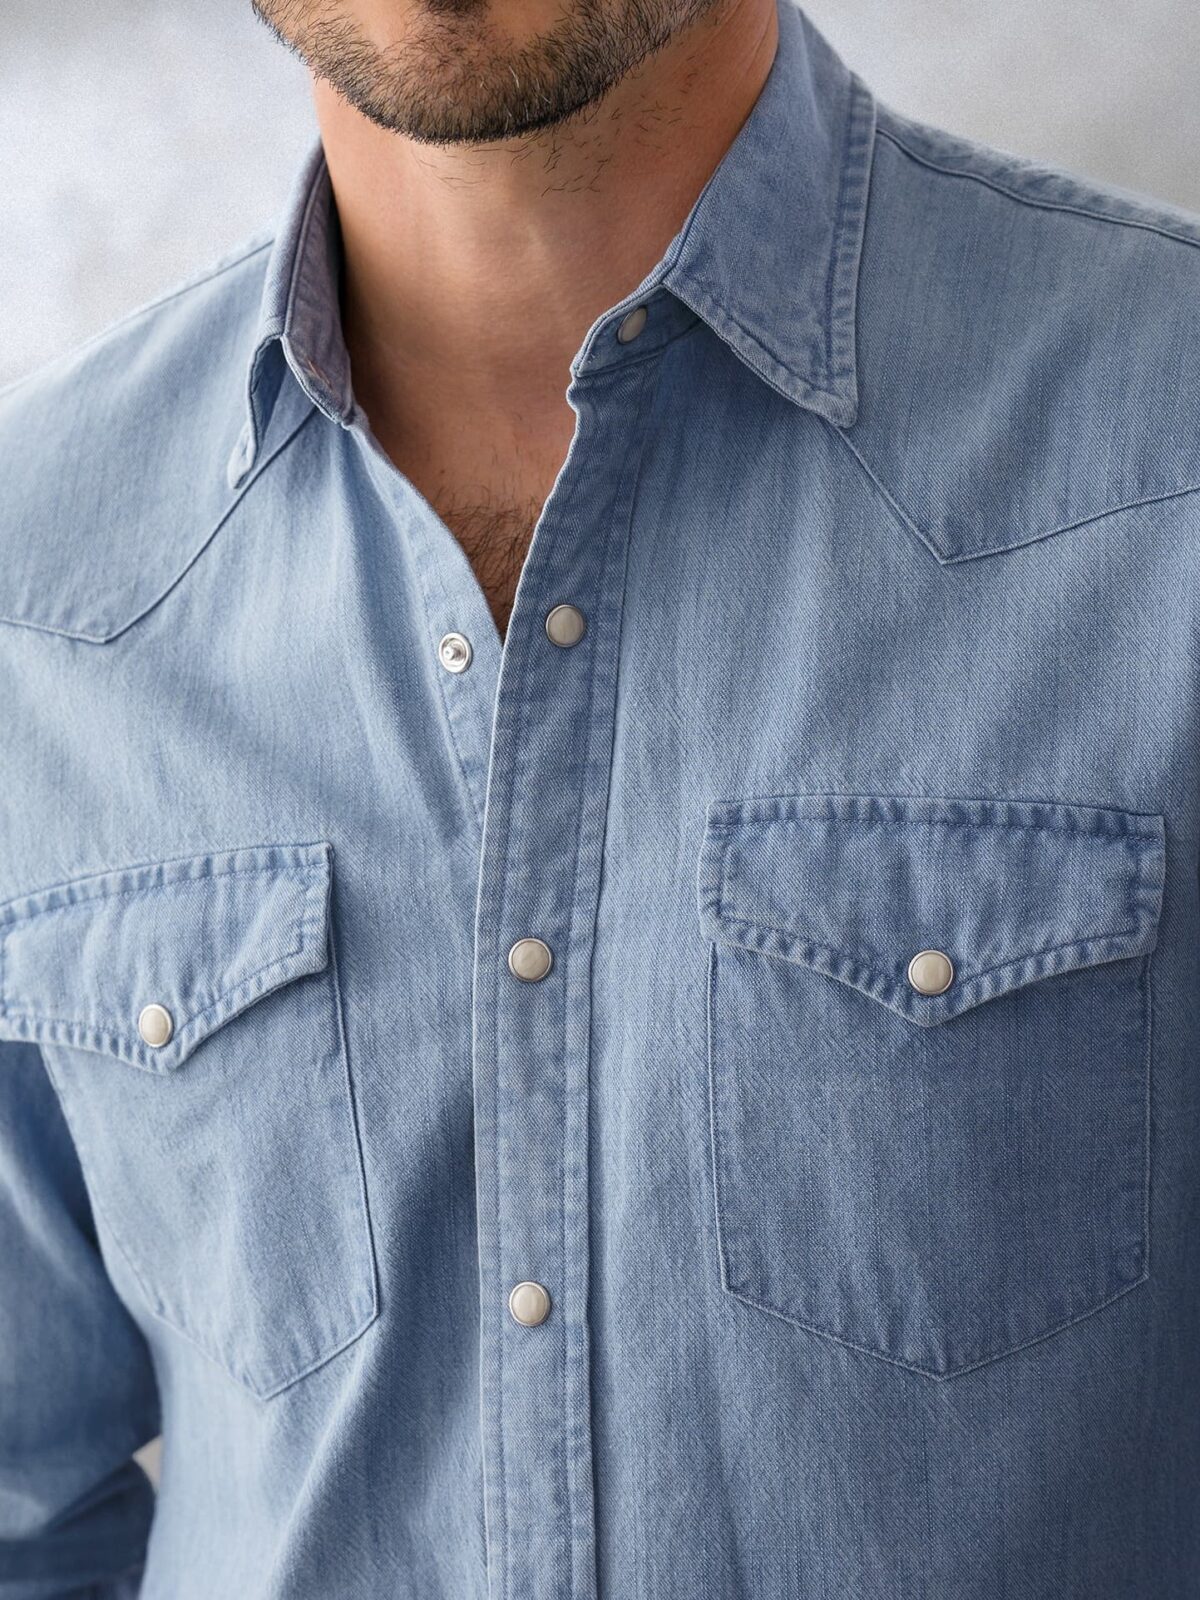 Buy Men's Blue Washed Denim Jacket Online at Sassafras